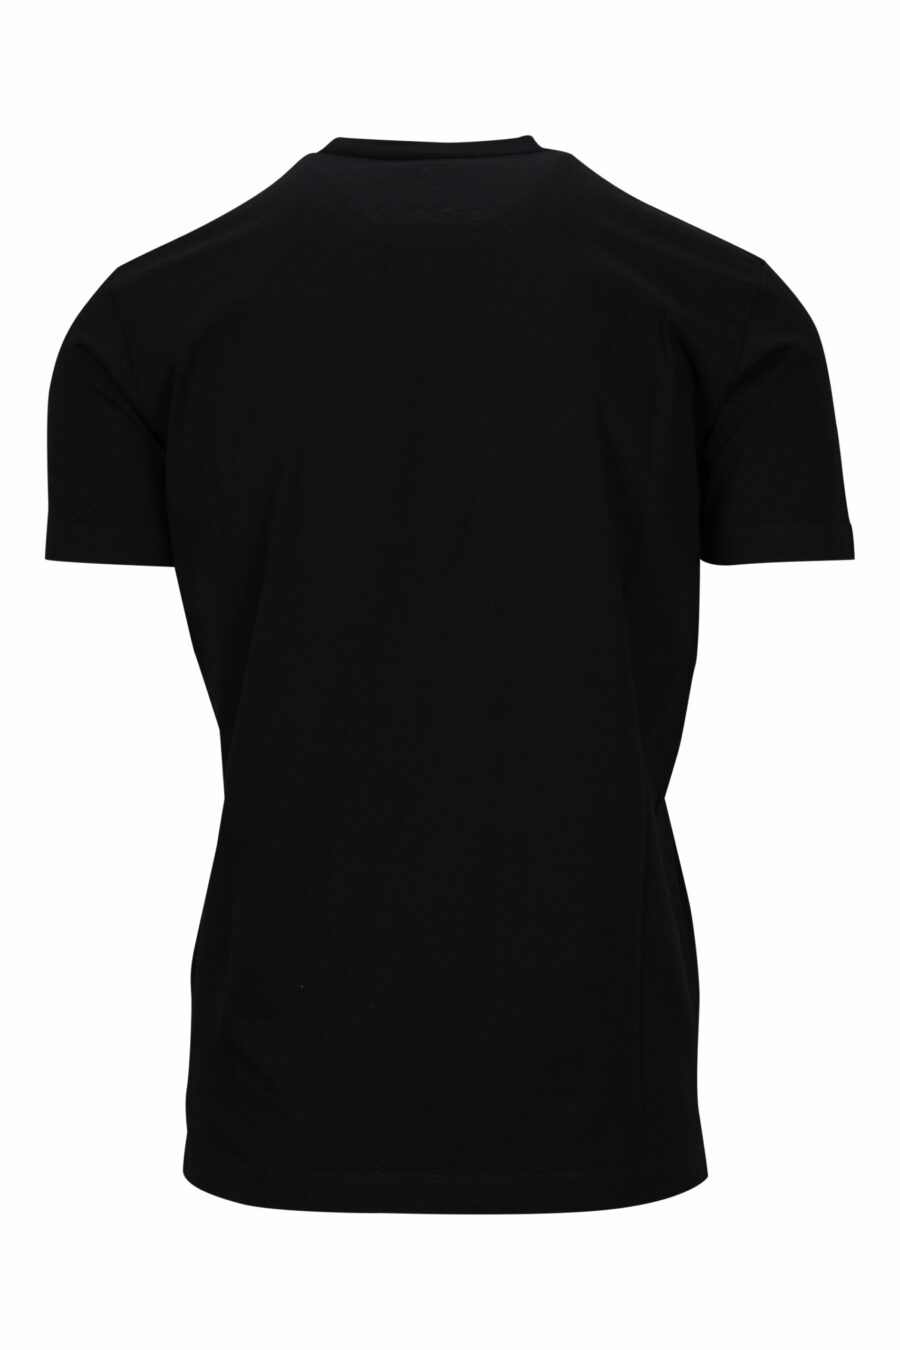 T-shirt noir avec maxilogo de chien de basket - 8054148332662 1 scaled